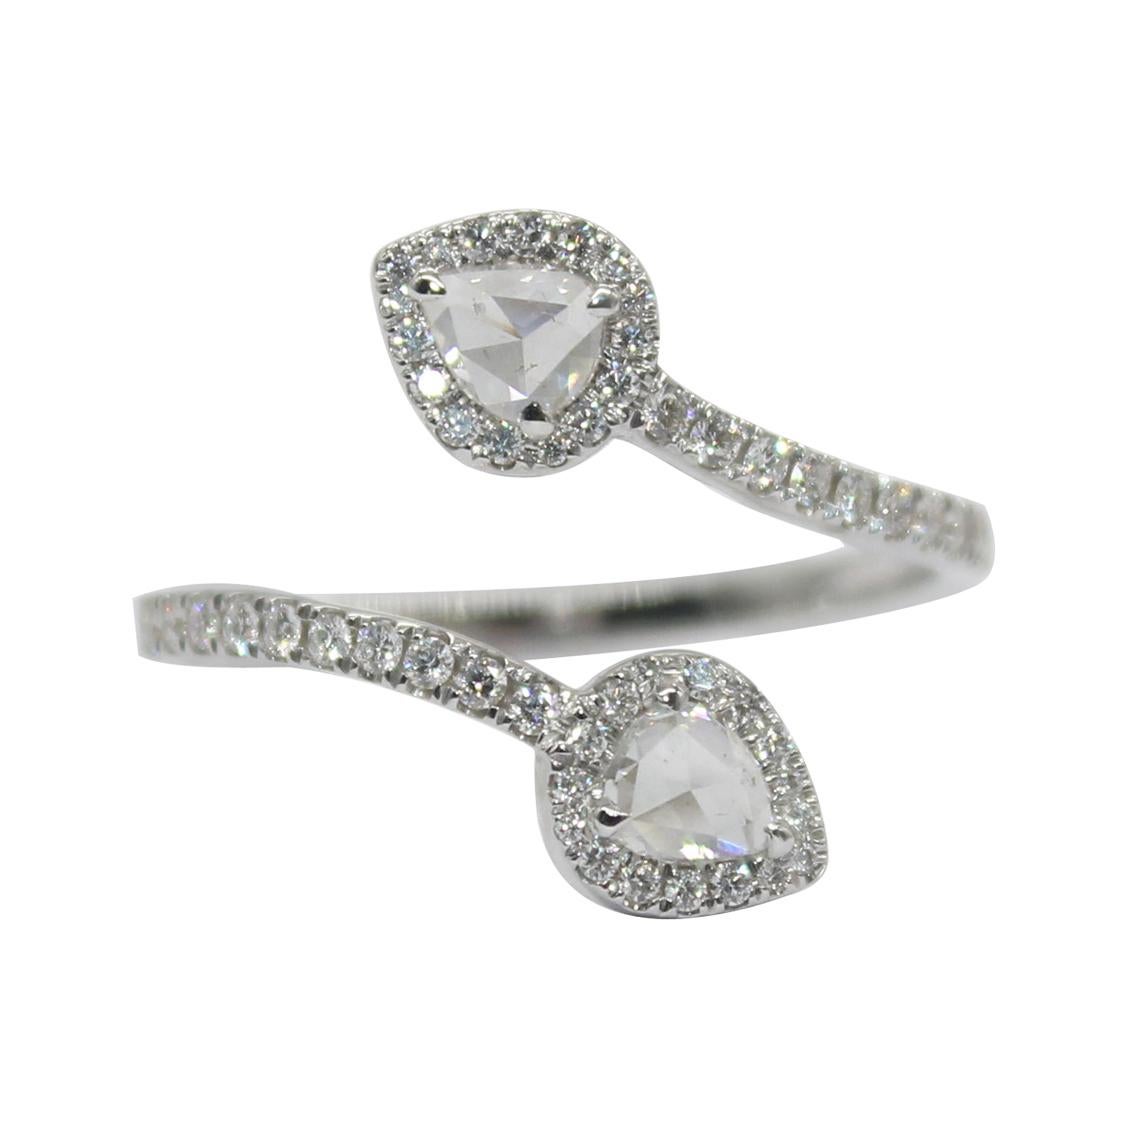 PANIM 0.68 Carat Two Pear Rosecut Diamond Ring in 18 Karat White Gold